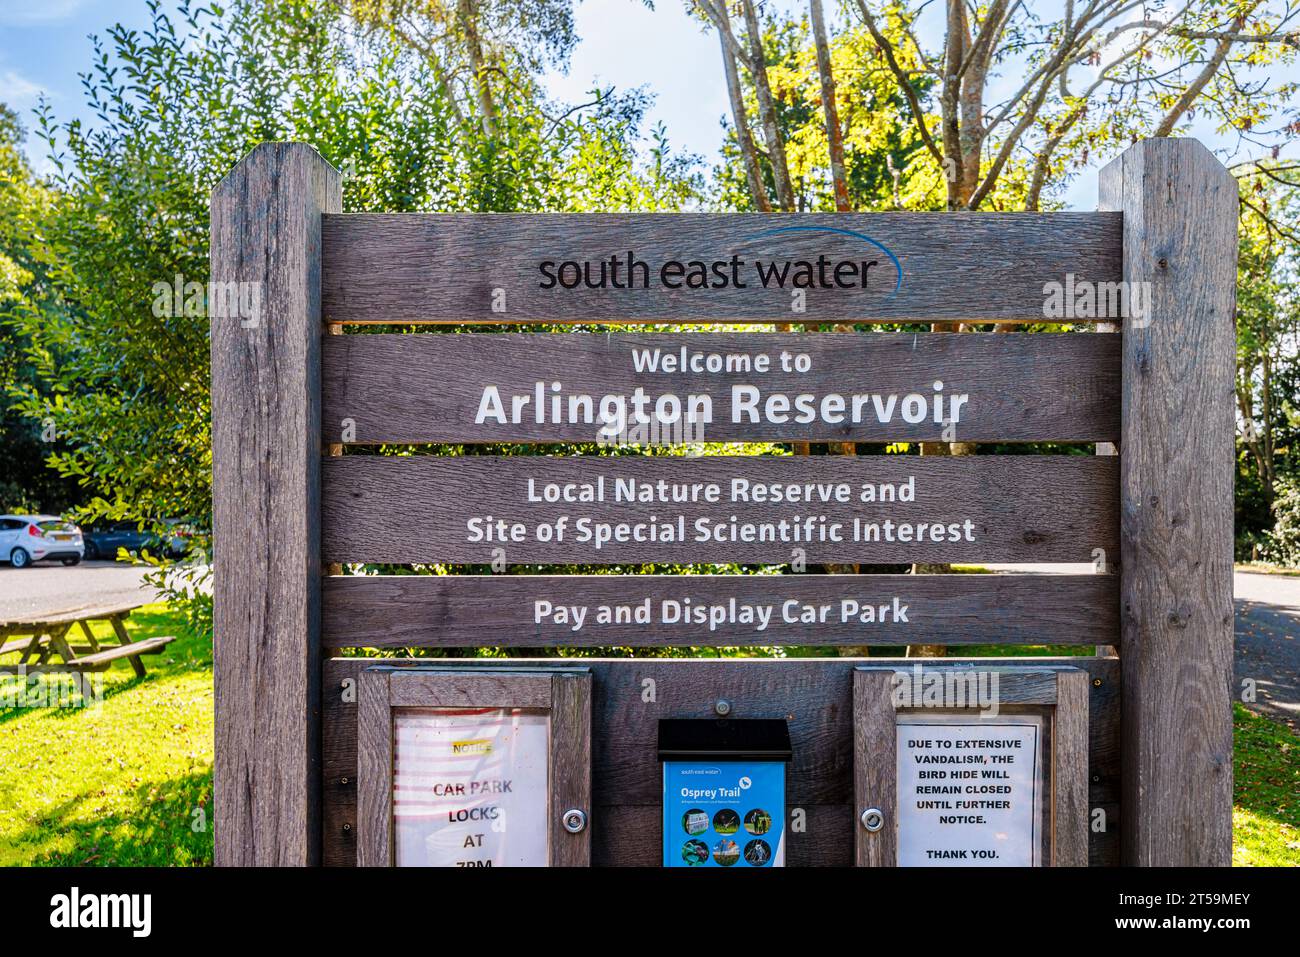 Begrüßungsschild im Arlington Reservoir, einem Gebiet von besonderem wissenschaftlichem Interesse und lokalem Naturschutzgebiet, das von South East Water, Polegate, East Sussex verwaltet wird Stockfoto